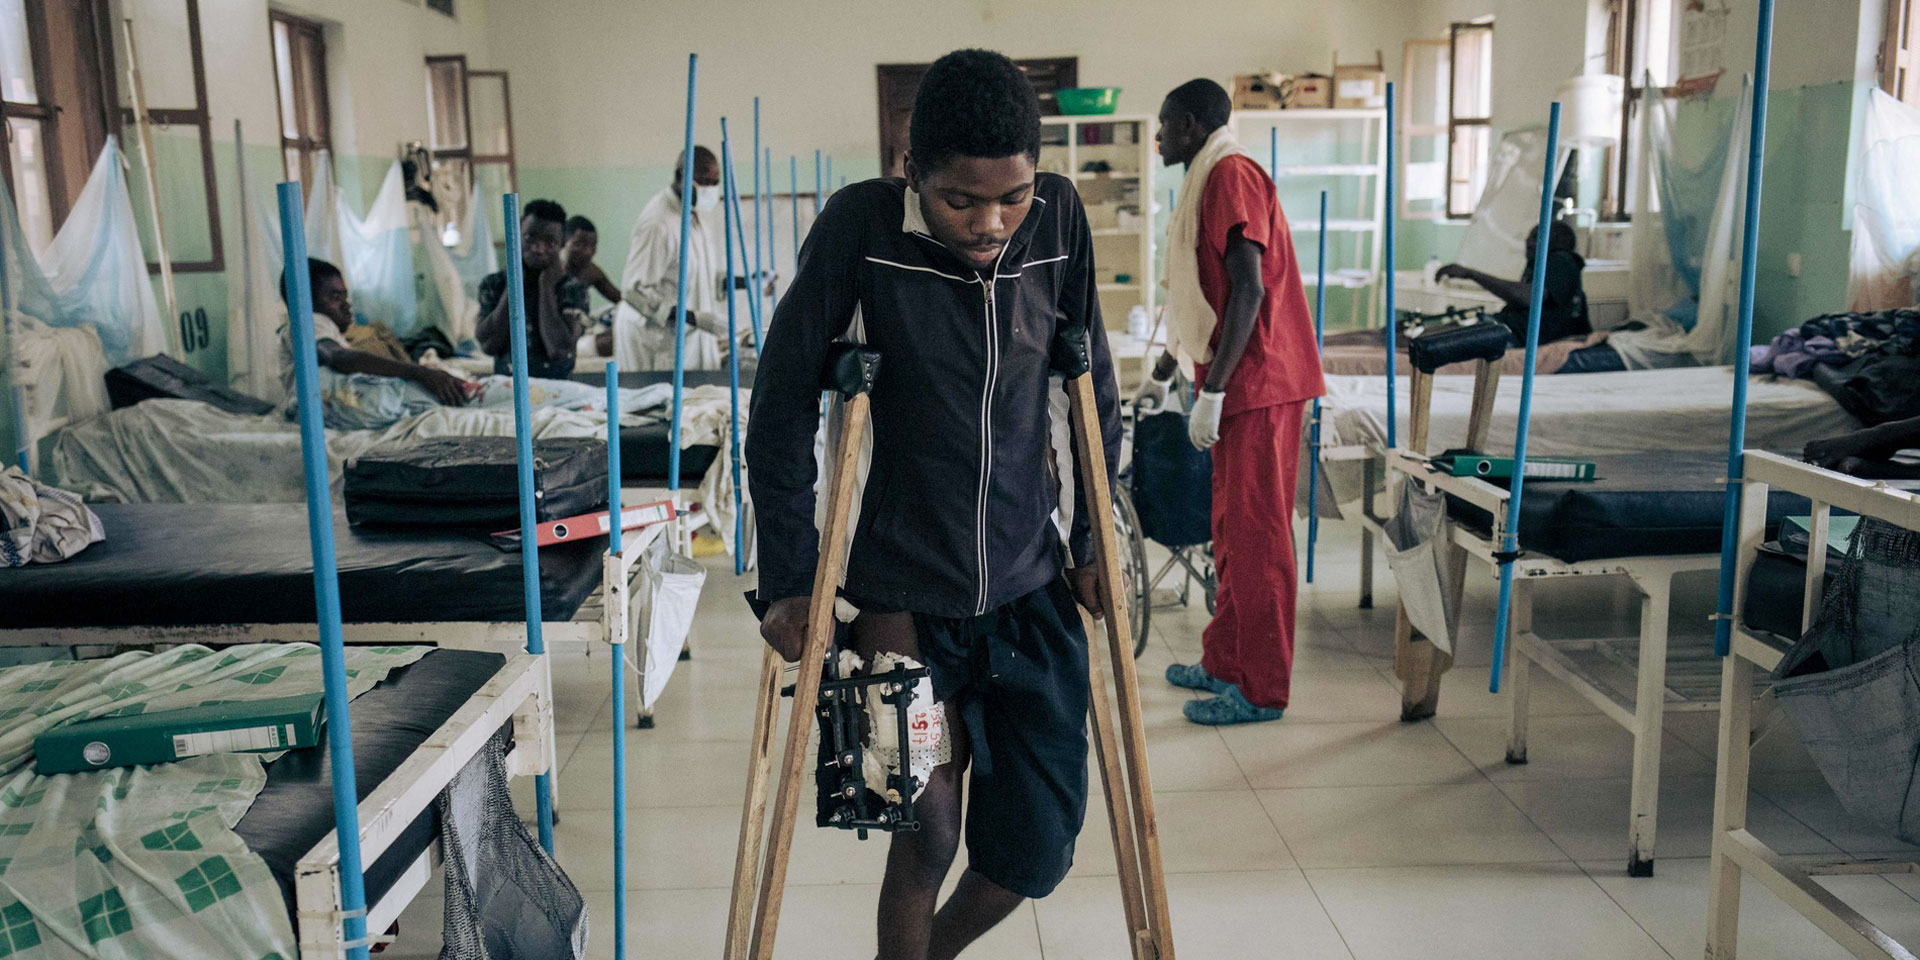 Un giovane africano con una ferita d'arma da fuoco alla gamba cammina con difficoltà sulle stampelle in un ospedale.